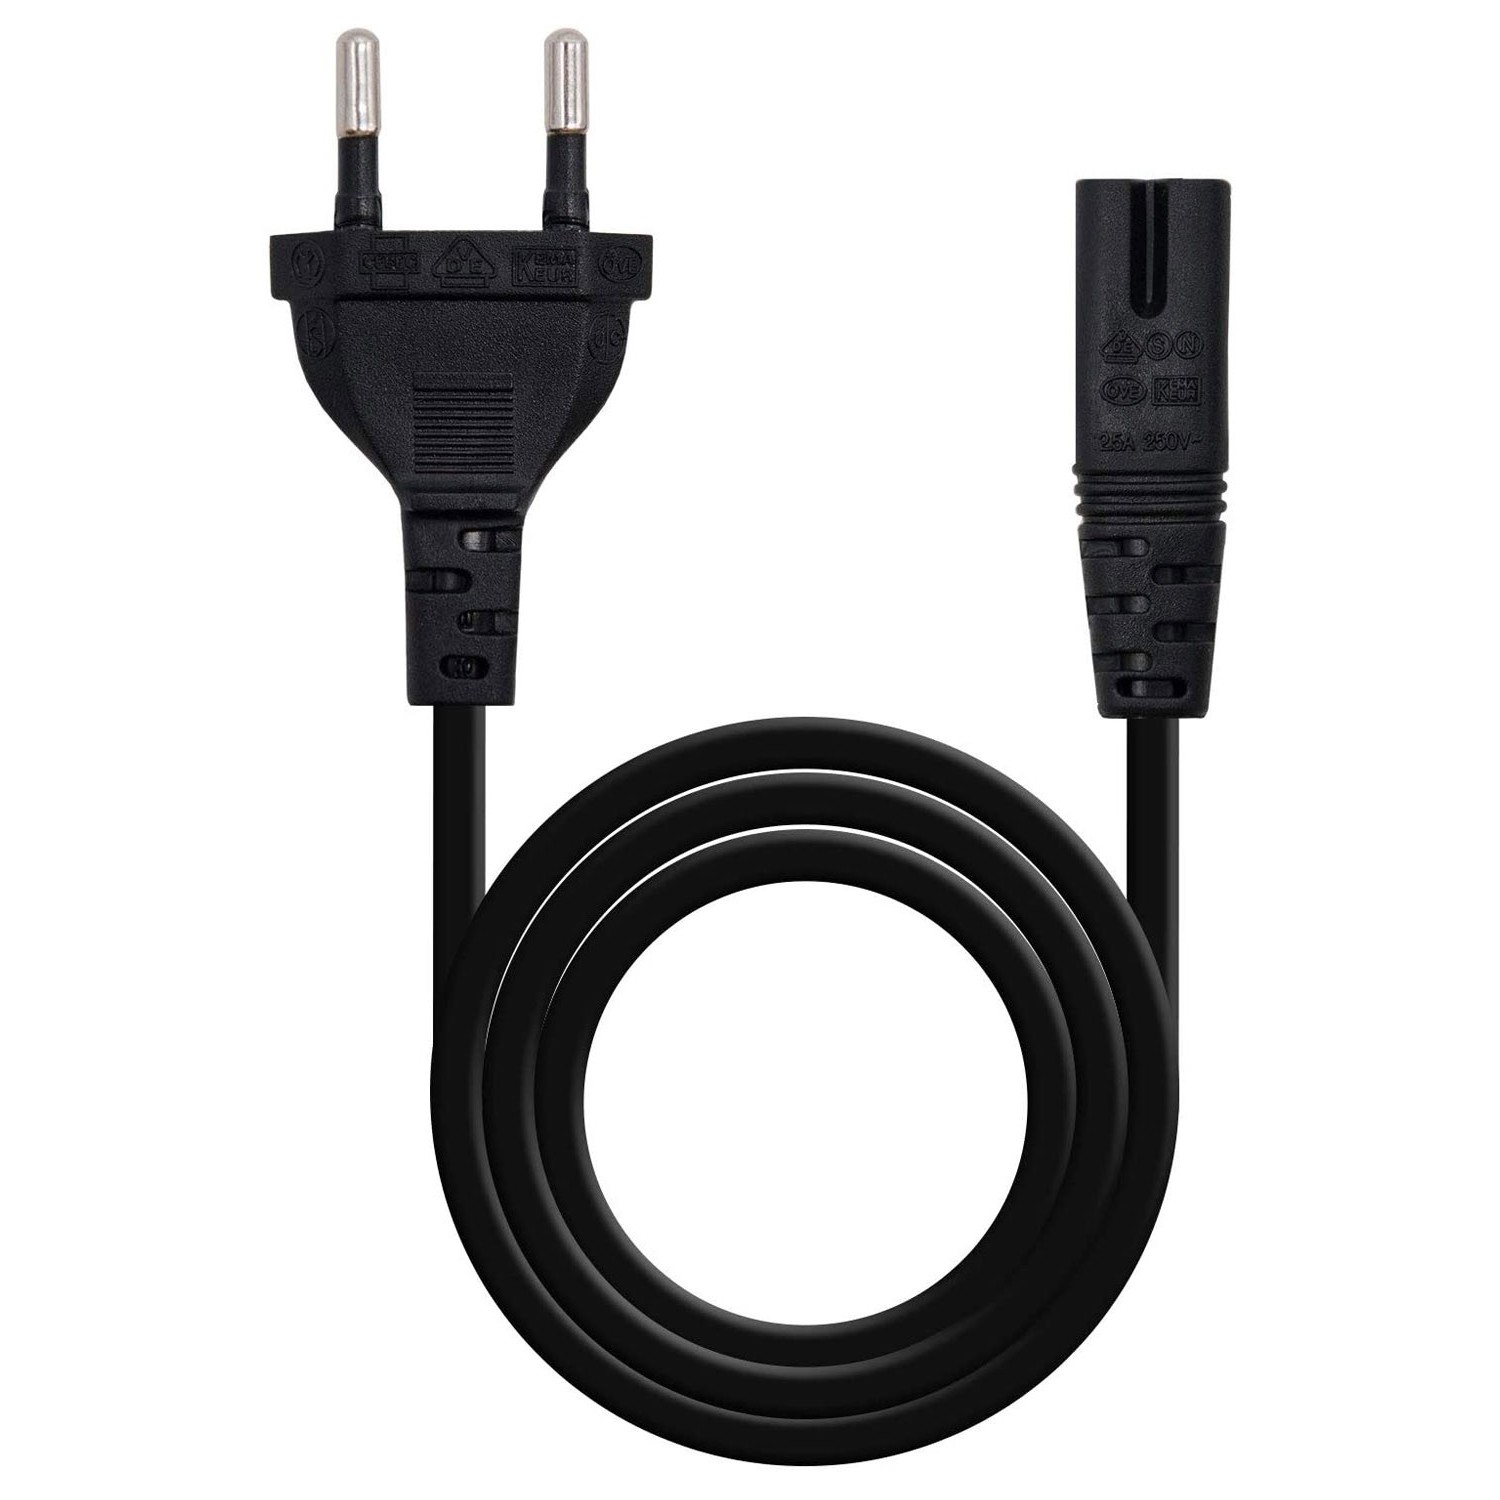 Cable de alimentación CEE 7/7para cargador Smart IP43 2m - ADA010100100 